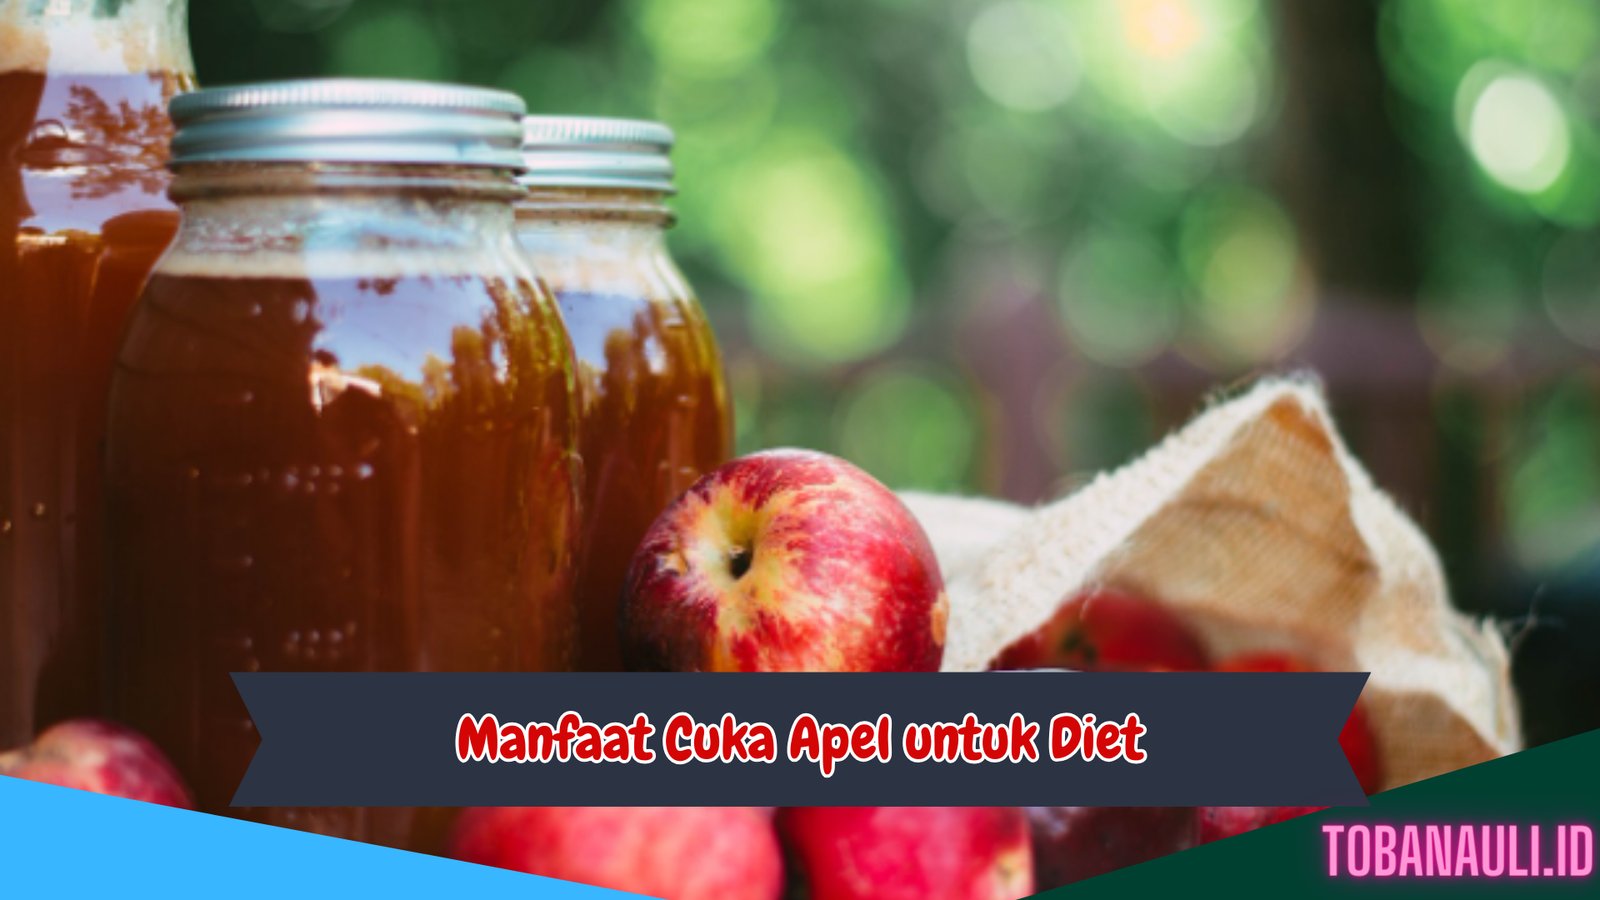 Manfaat Cuka Apel untuk Diet